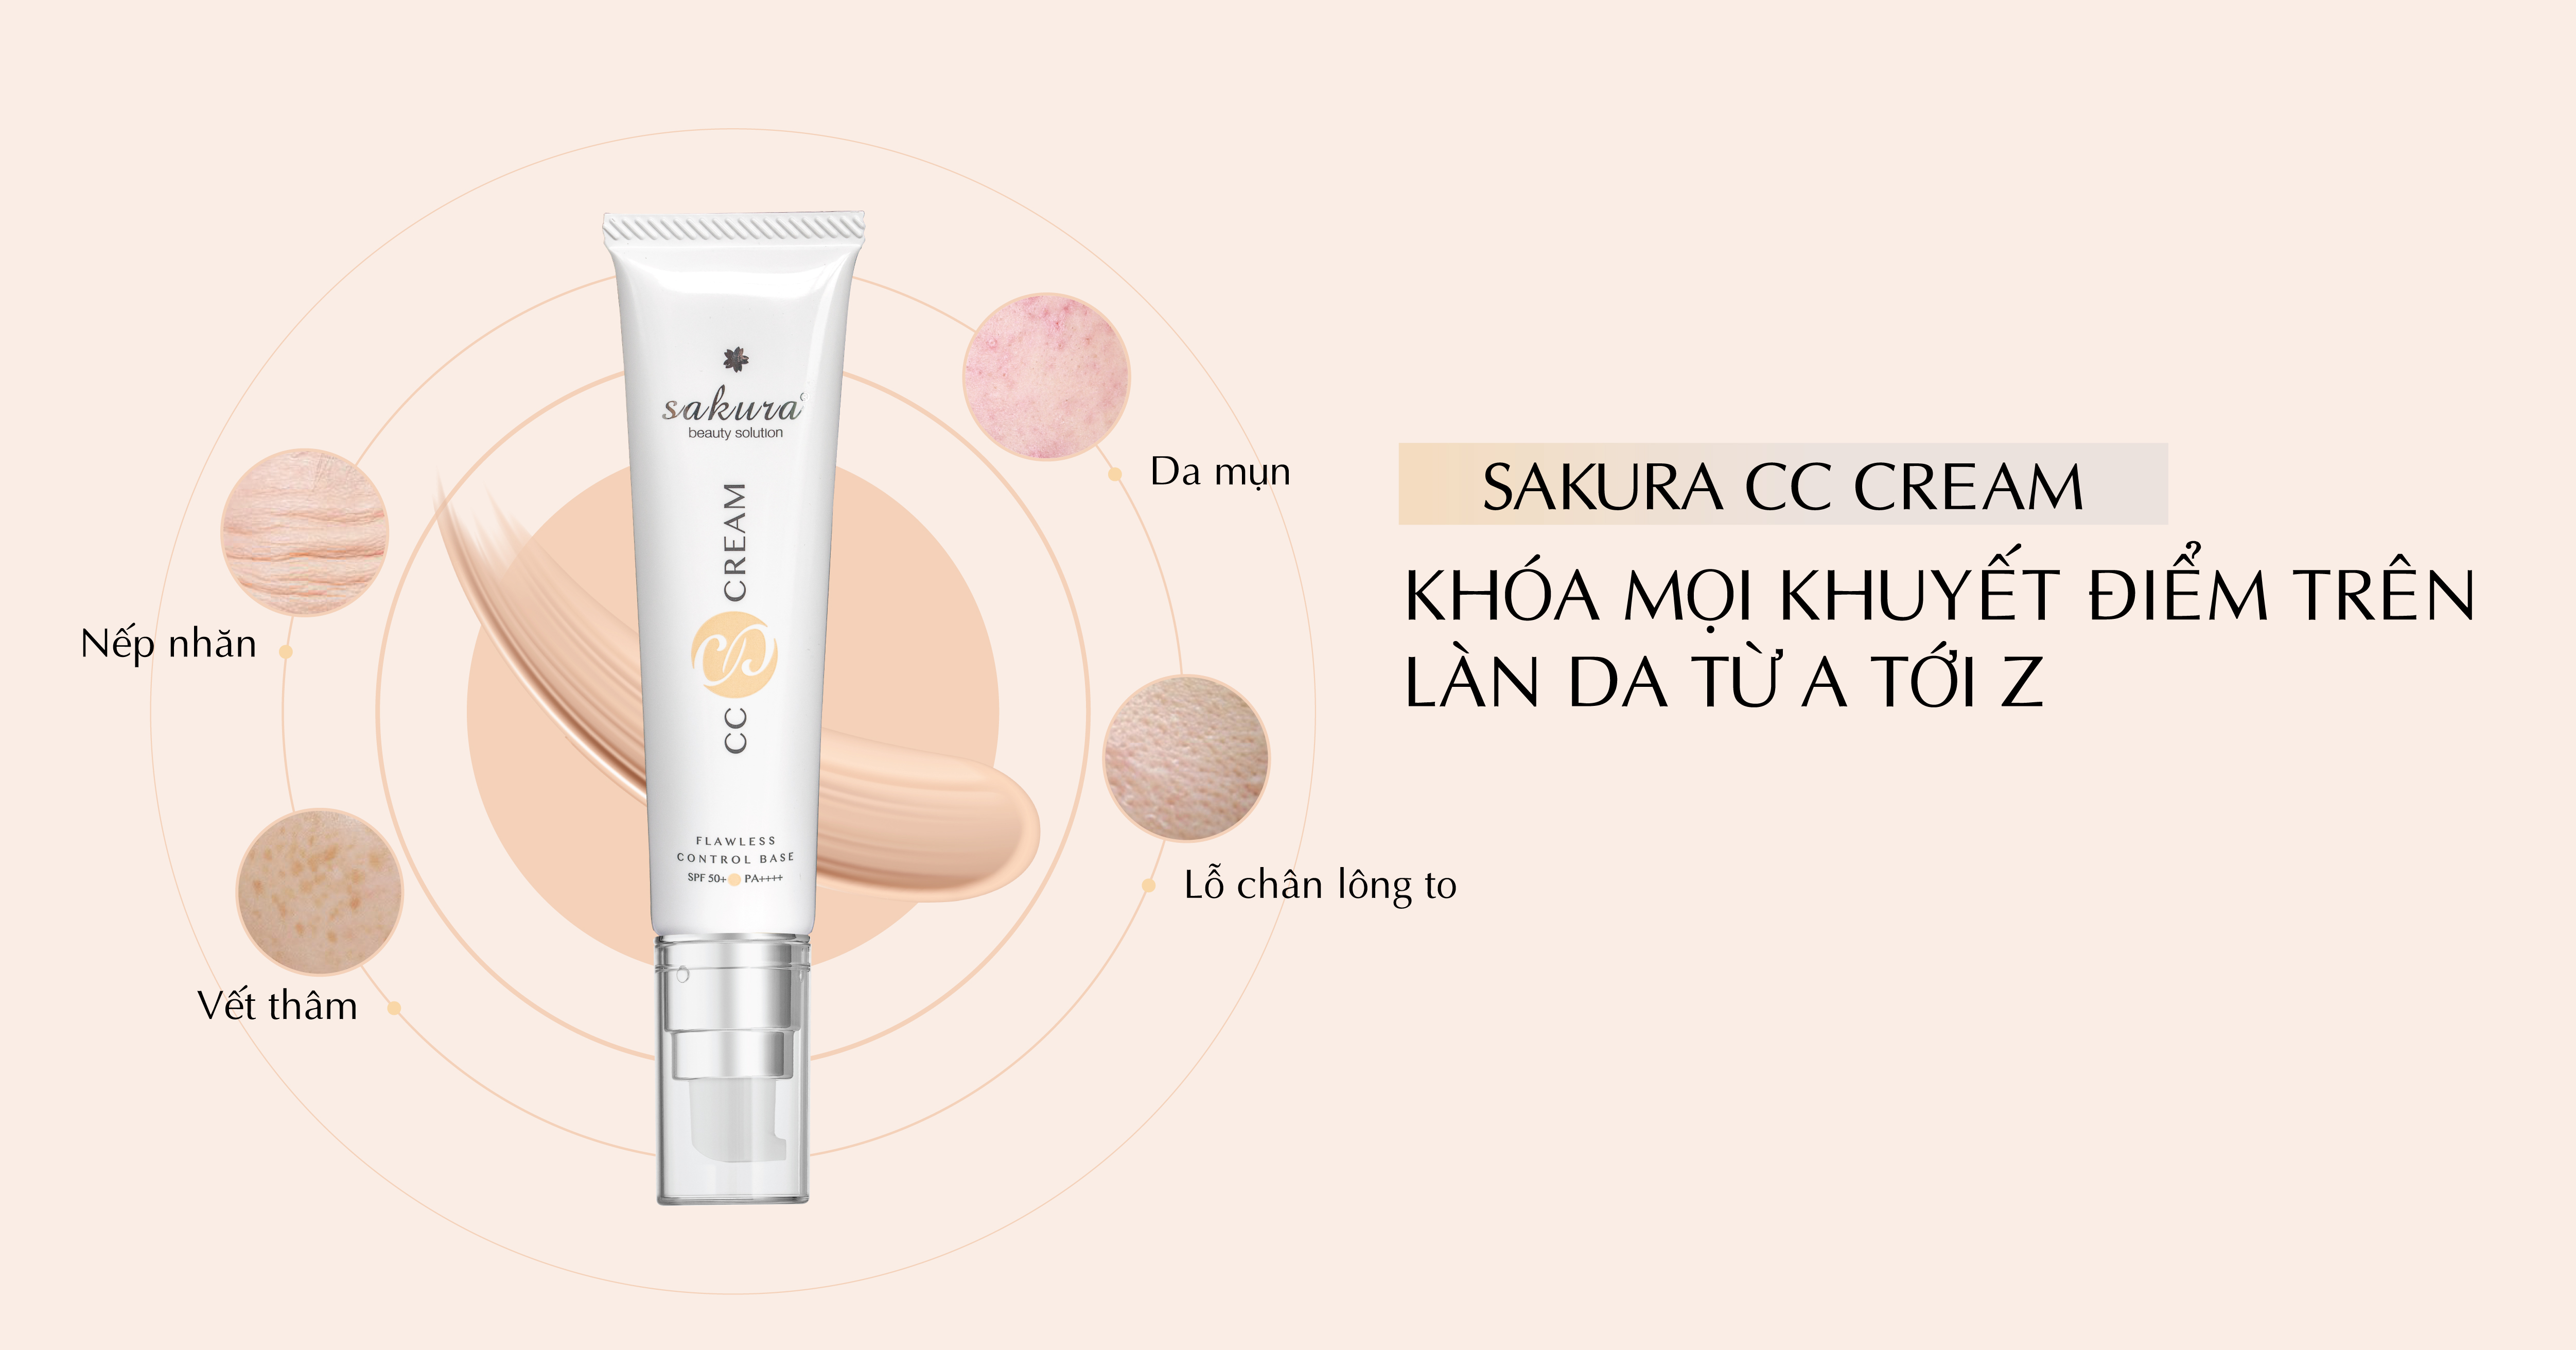 Sakura CC Cream là dòng sản phẩm trang điểm đa năng được yêu thích hiện nay, kết hợp dưỡng da, làm đều màu da, che khuyết điểm hiệu quả và chống nắng tối ưu